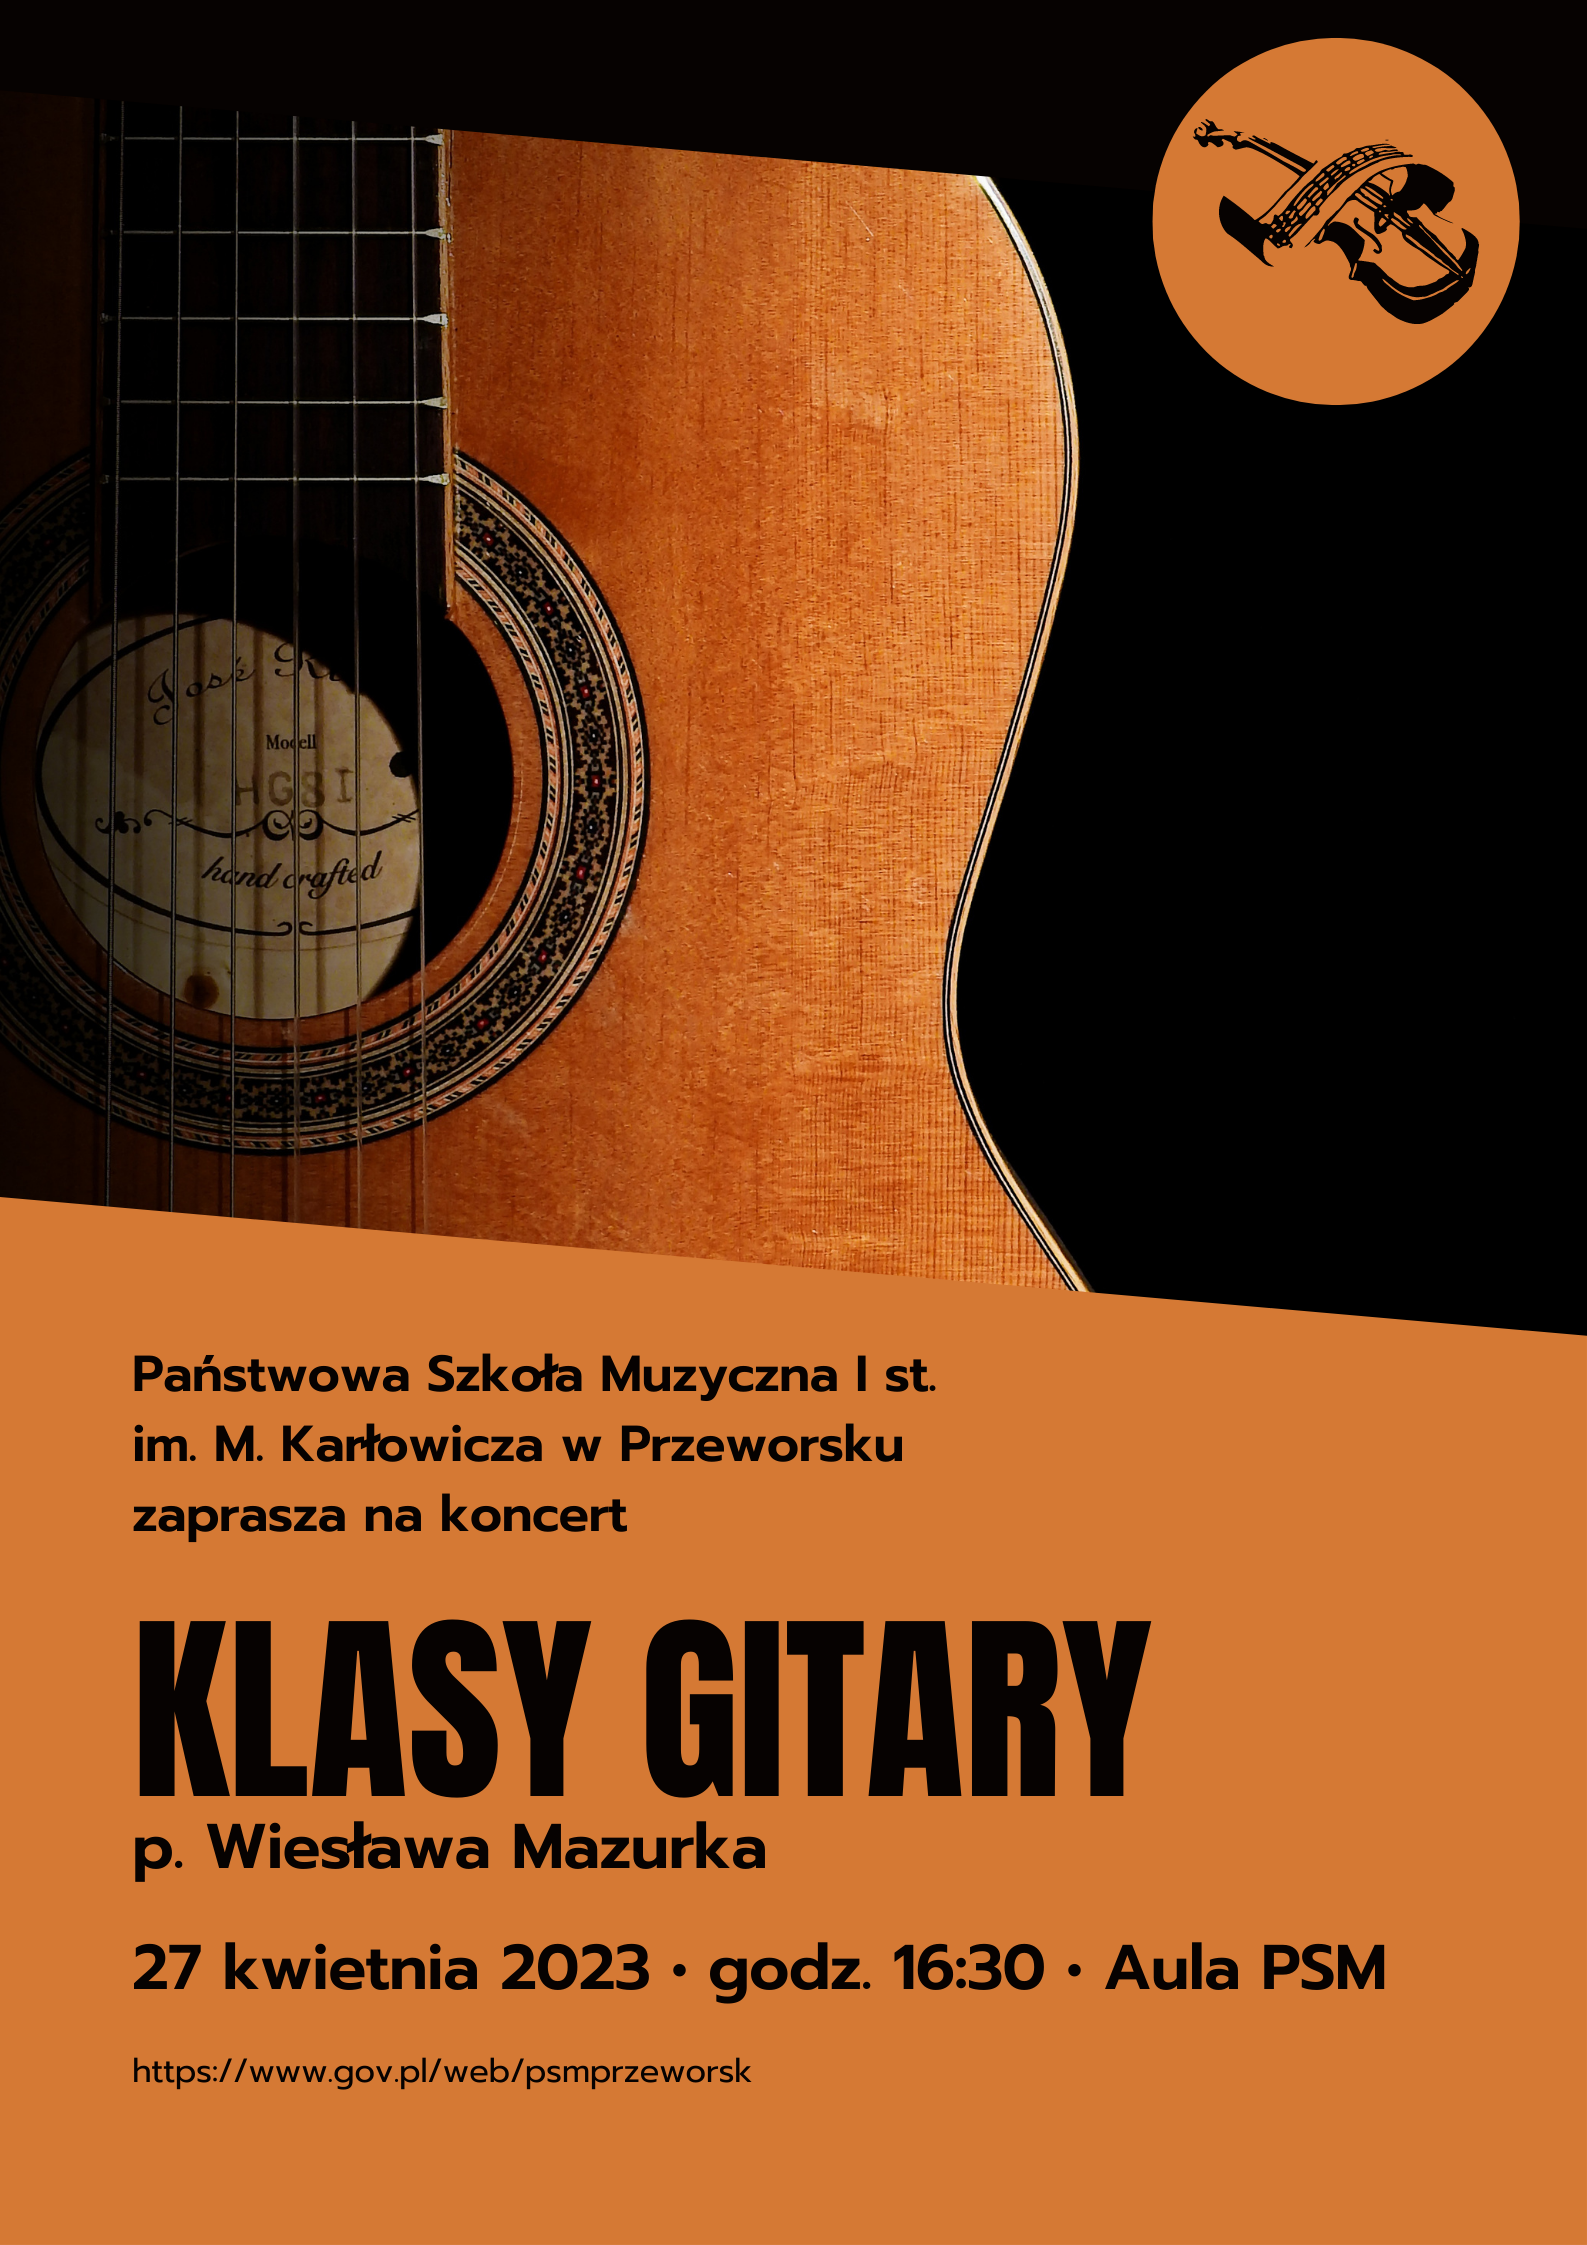 Koncert klasy gitary p. Wiesława Mazurka, 27 kwietnia 2023 godz. 16;30, Aula PSM I st. w Przeworsku. W tle pudło gitary. Plakat w odcieniach brązu.